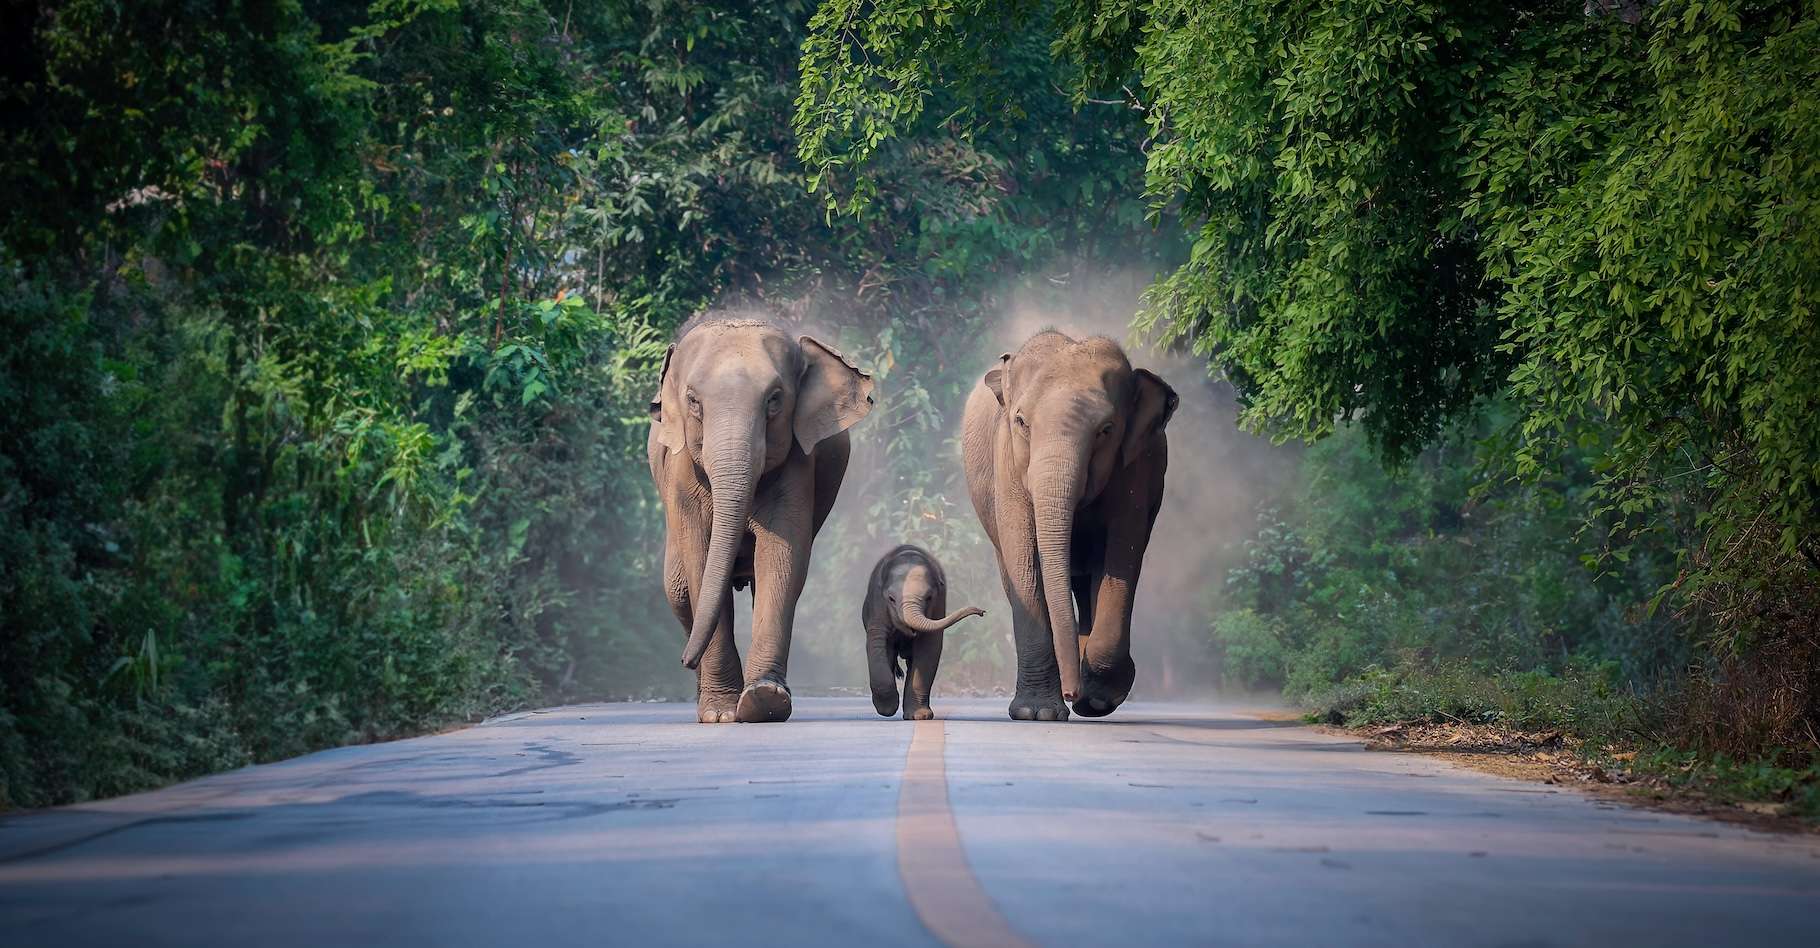 Les éléphants d’Asie ne font pas que pleurer les morts, ils les enterrent aussi